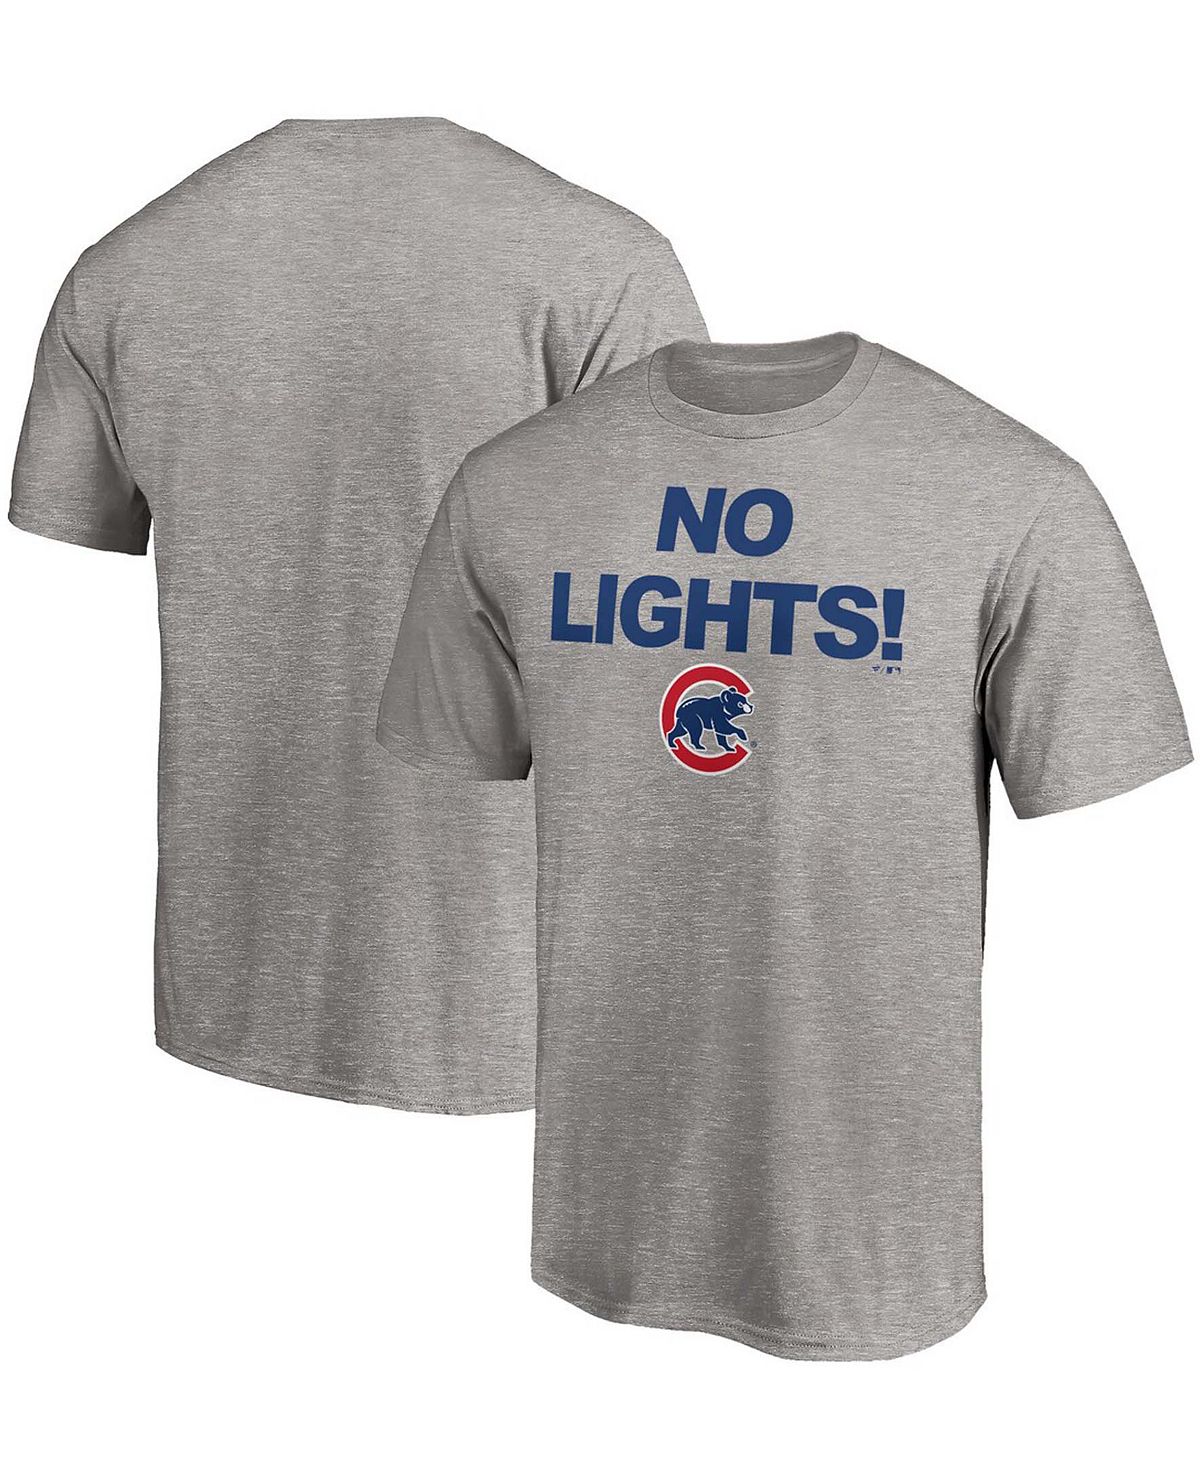 Мужская футболка chicago cubs hometown с меланжевым покрытием серого цвета Fanatics, мульти цена и фото